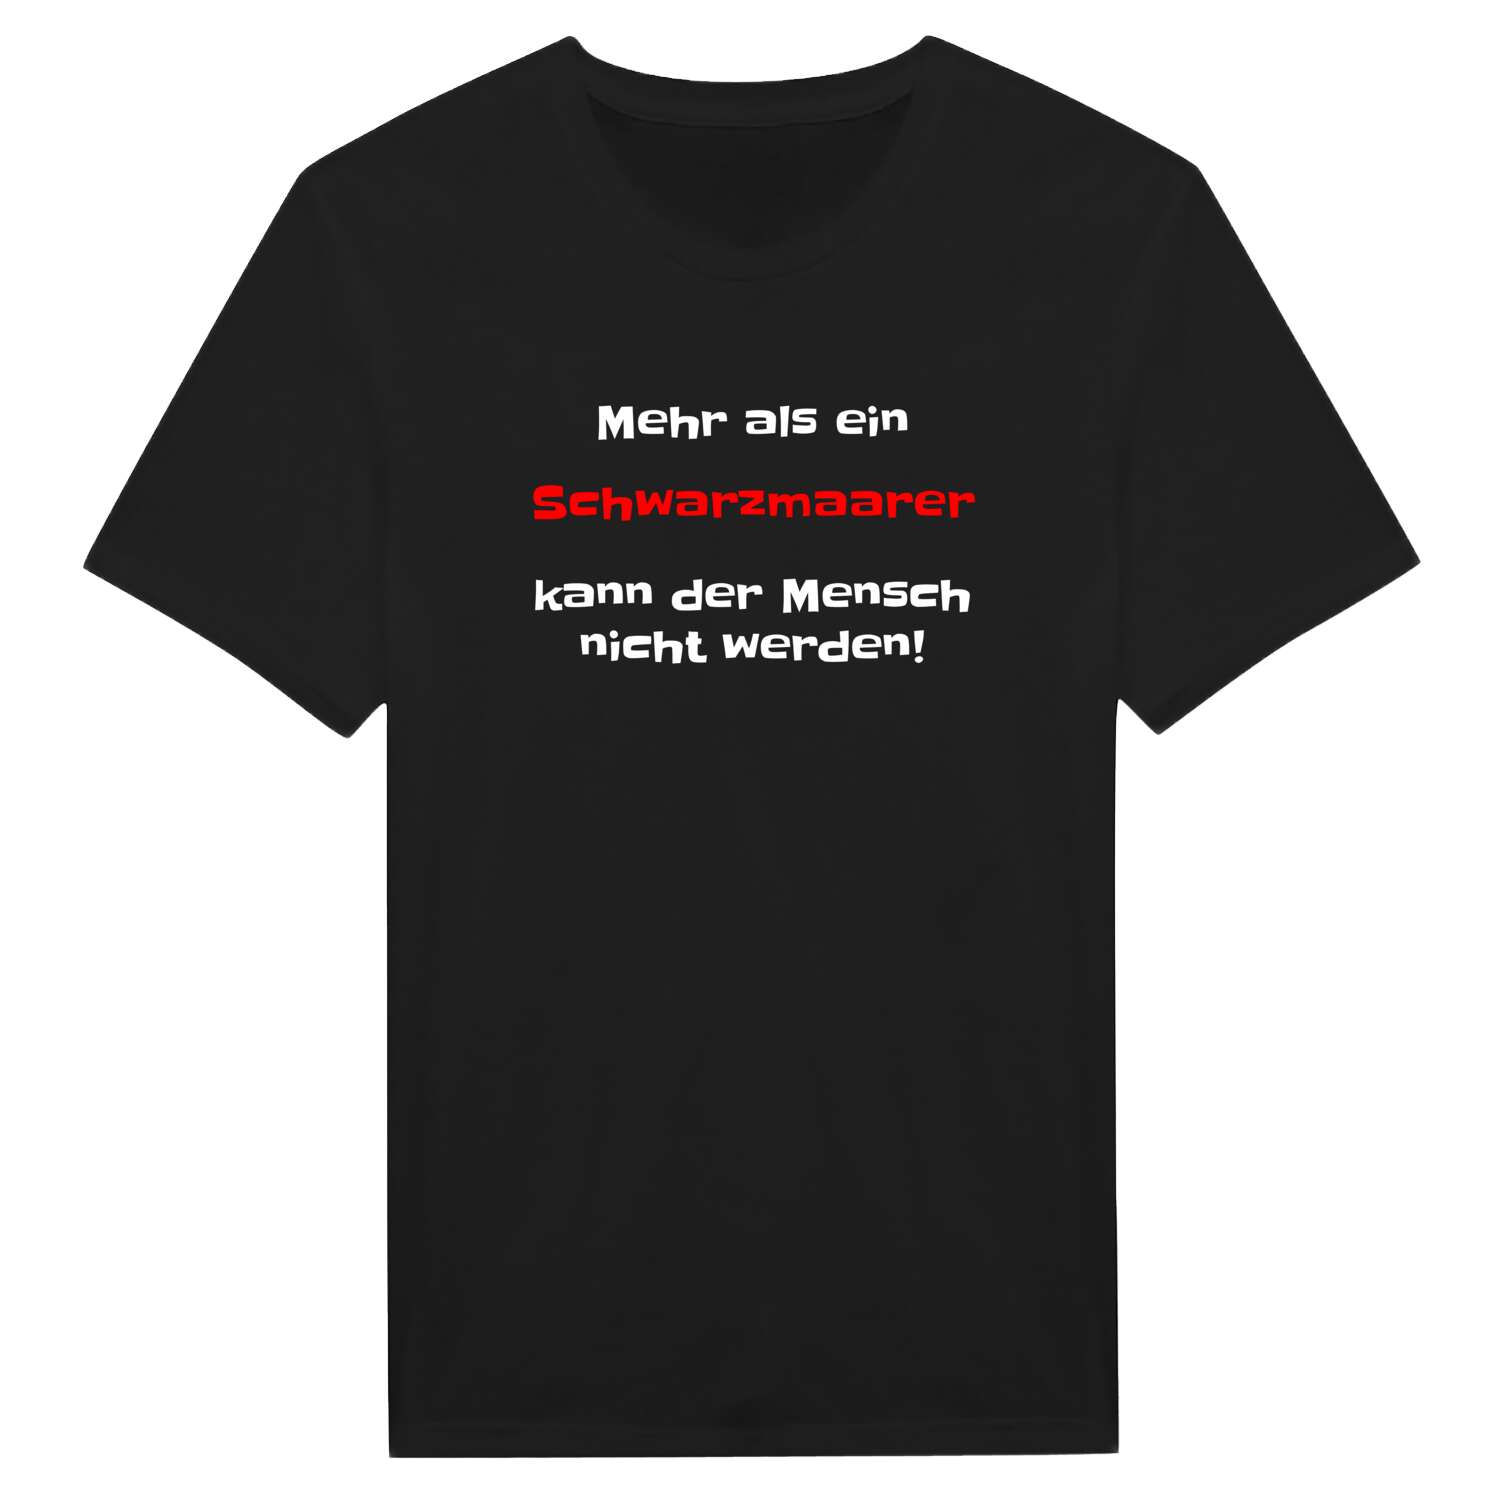 Schwarzmaar T-Shirt »Mehr als ein«